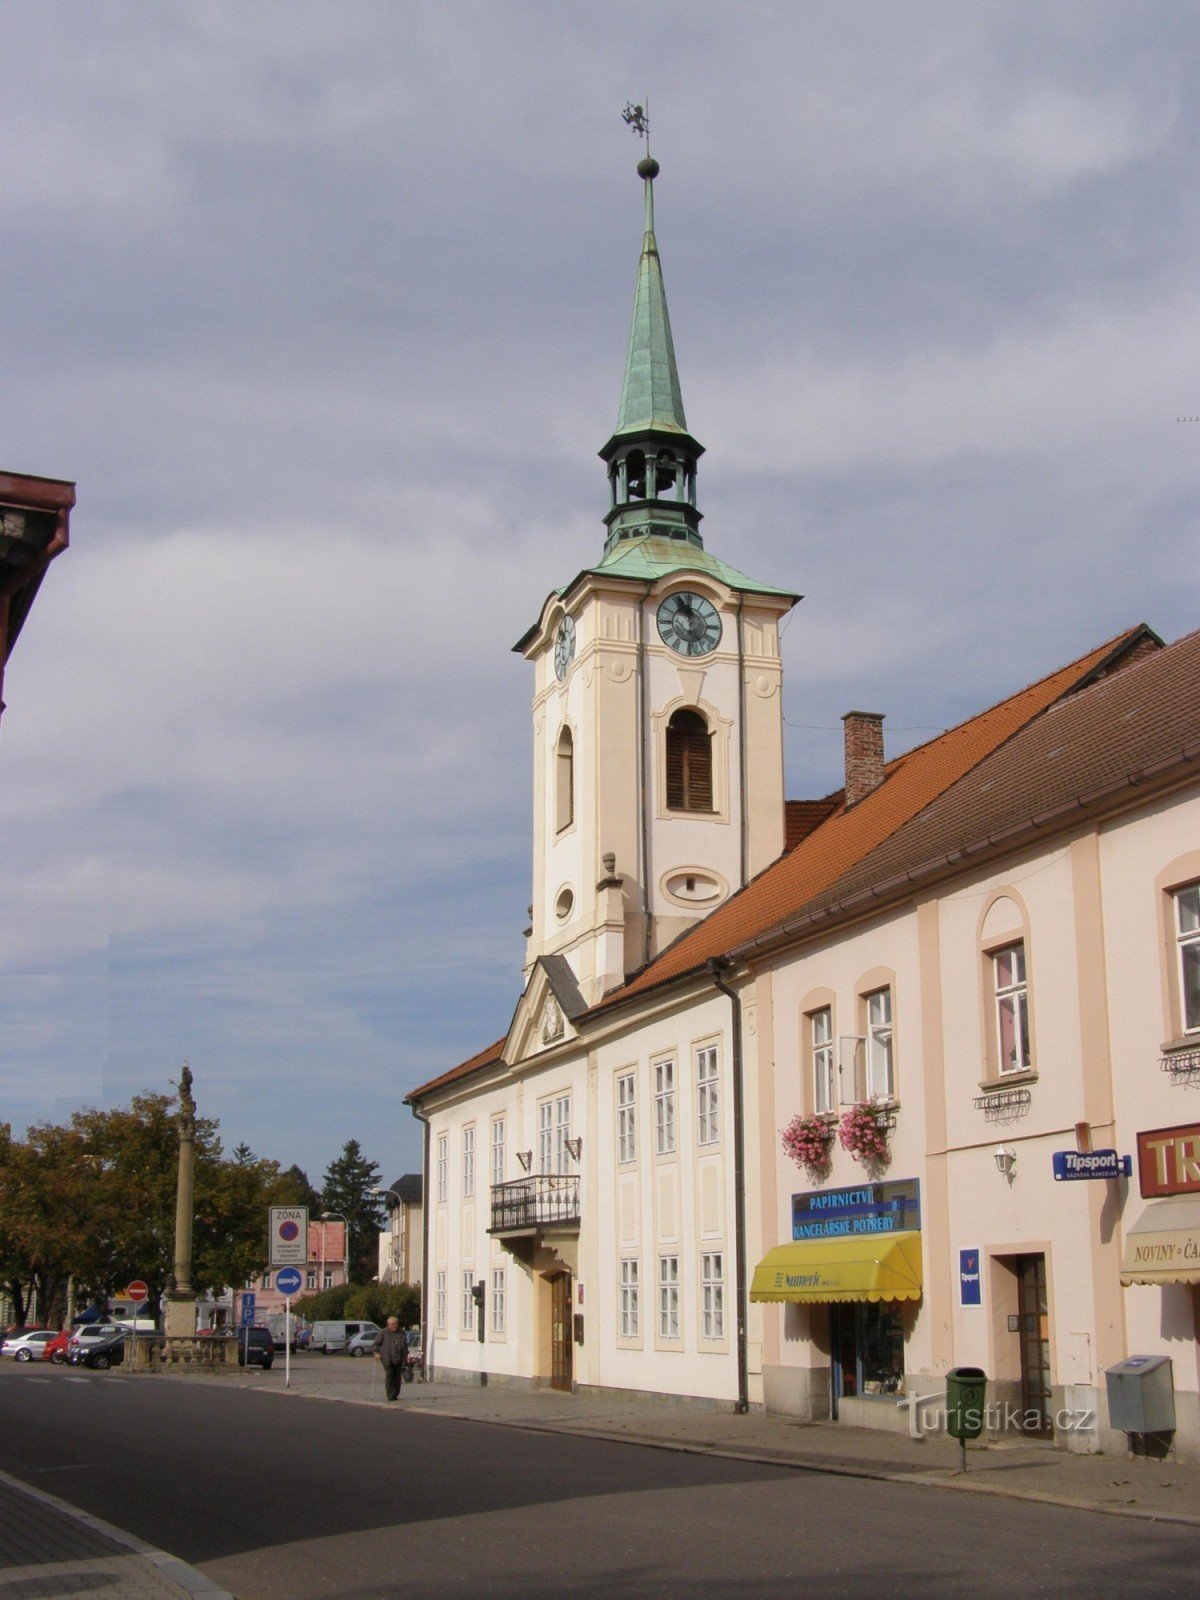 Kostelec nad Orlicí - 旧市政厅